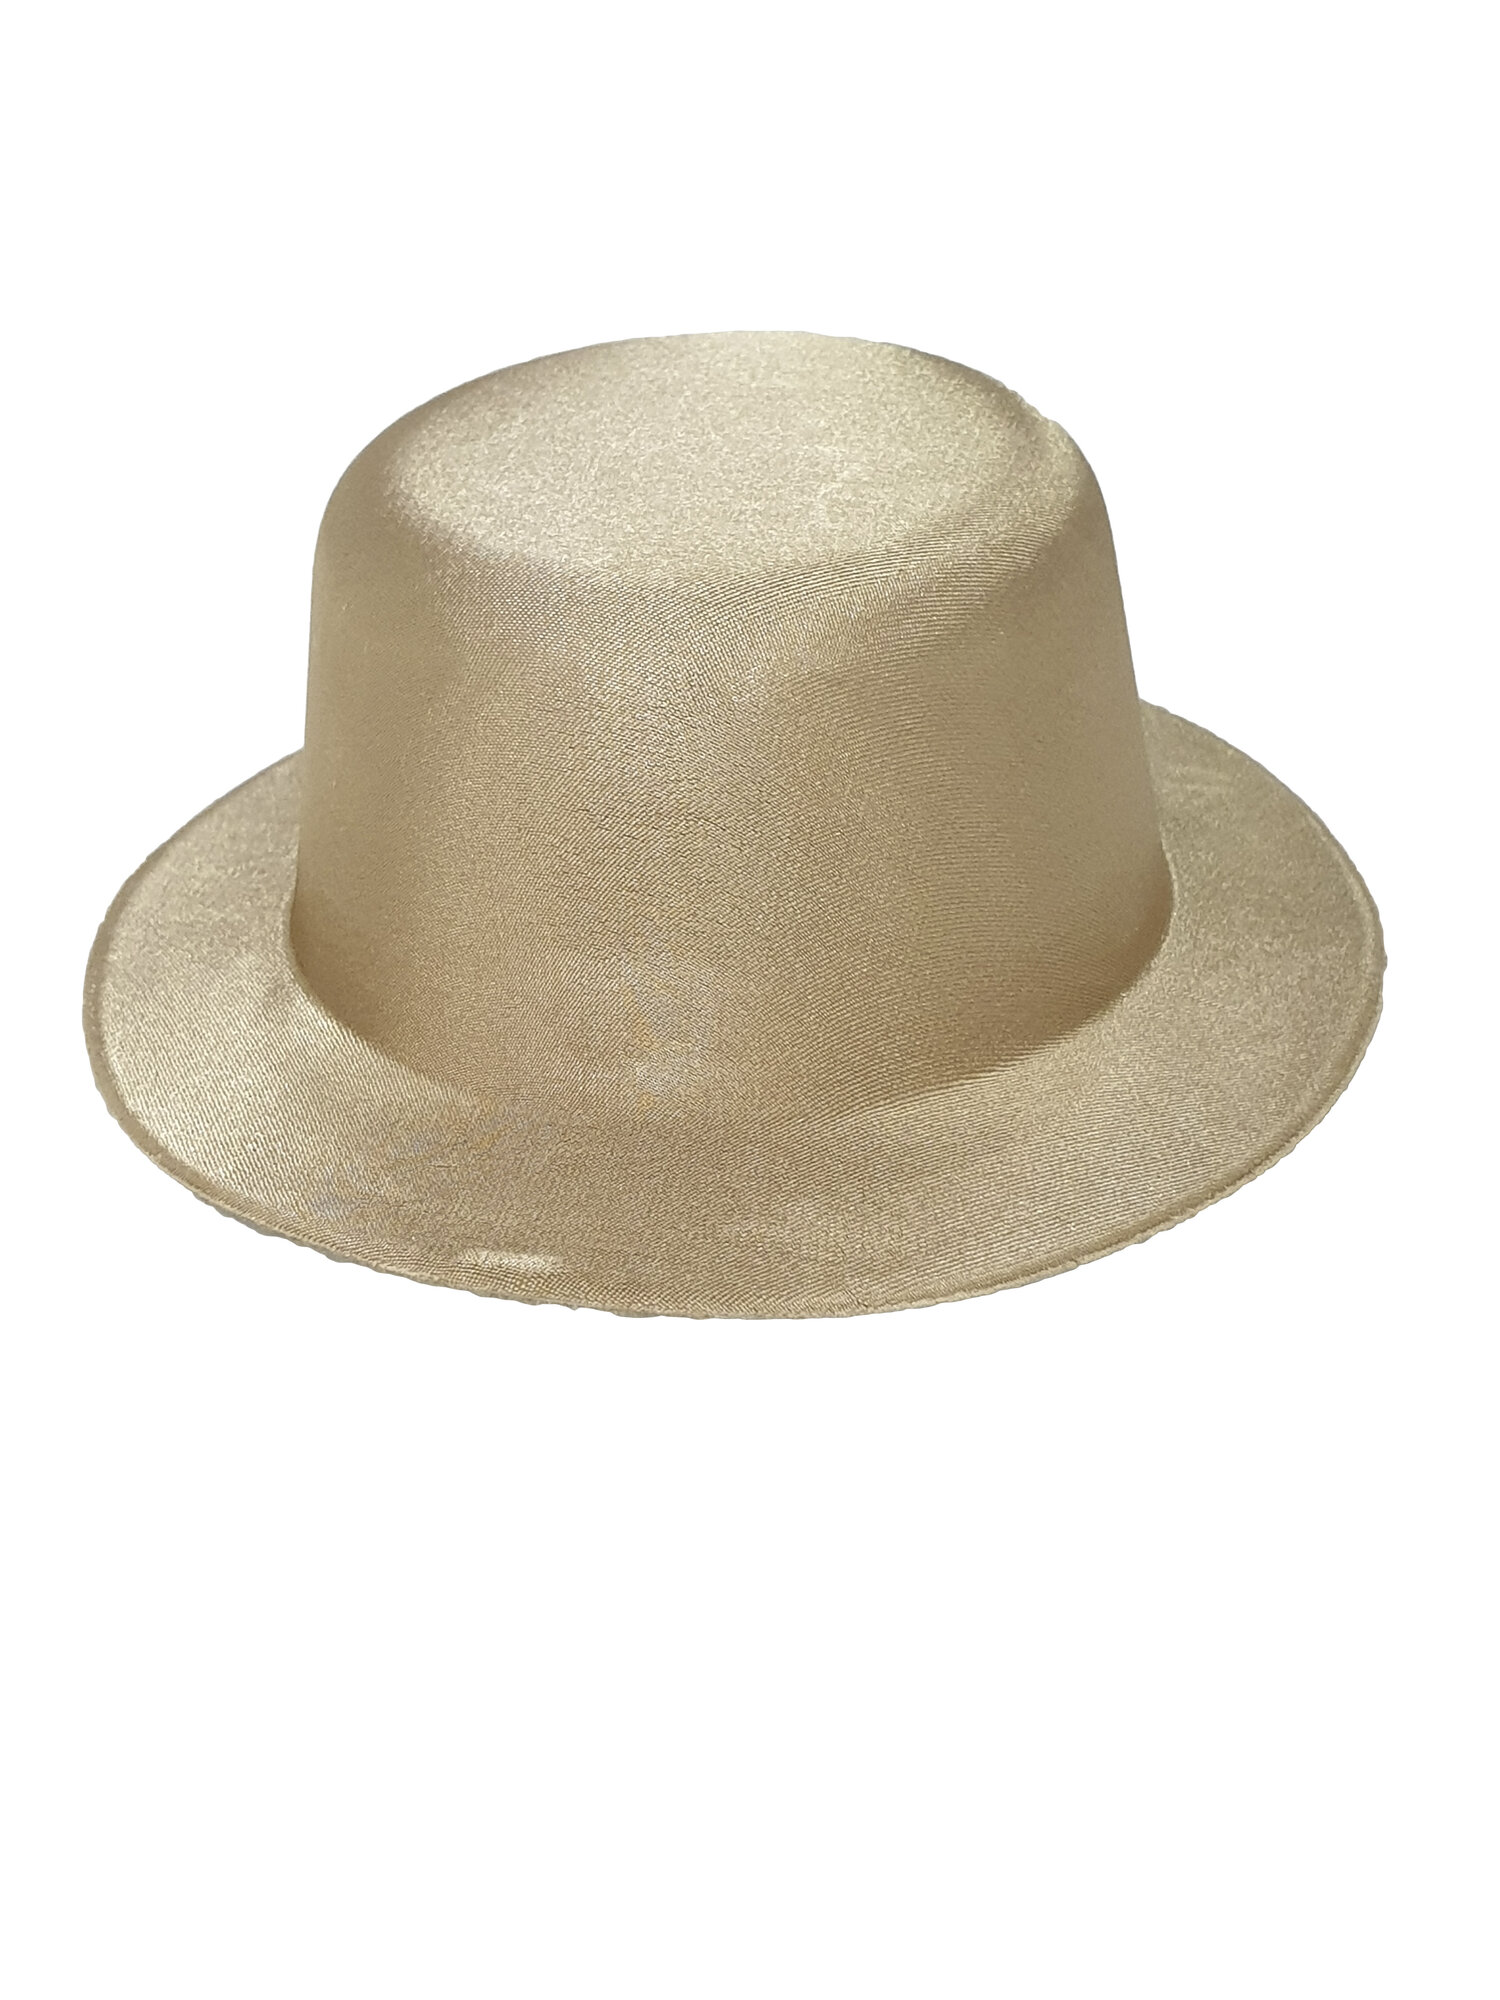 Шляпа карнавальная, заколка, 13 см в диаметре, золотой